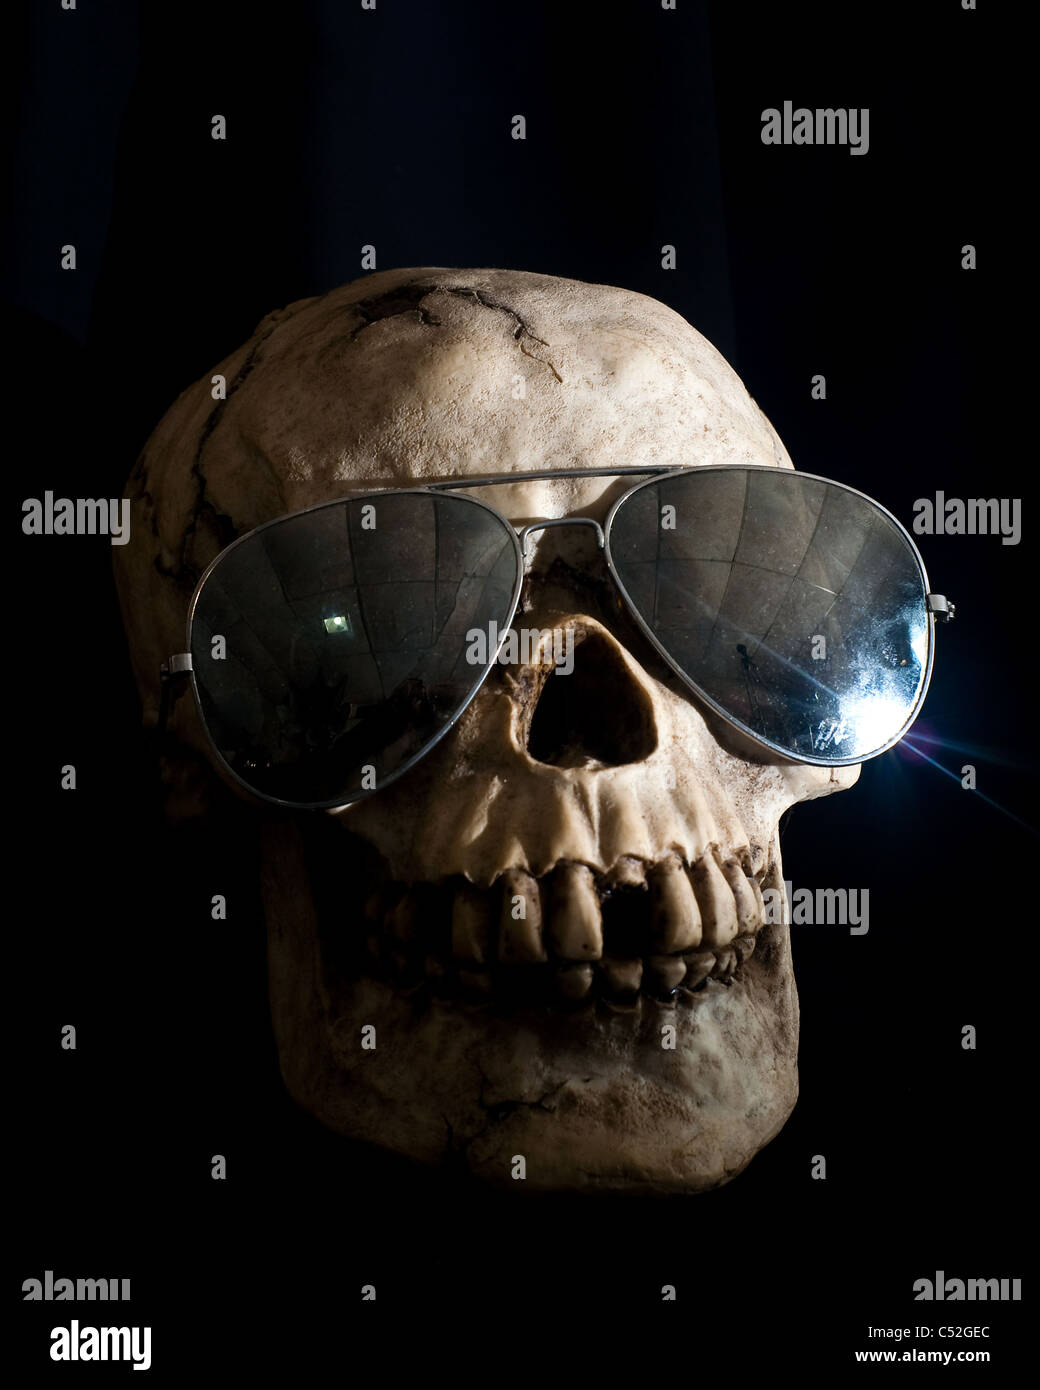 Human skull in shadow wearing mirrored aviator sunglasses Stock Photo